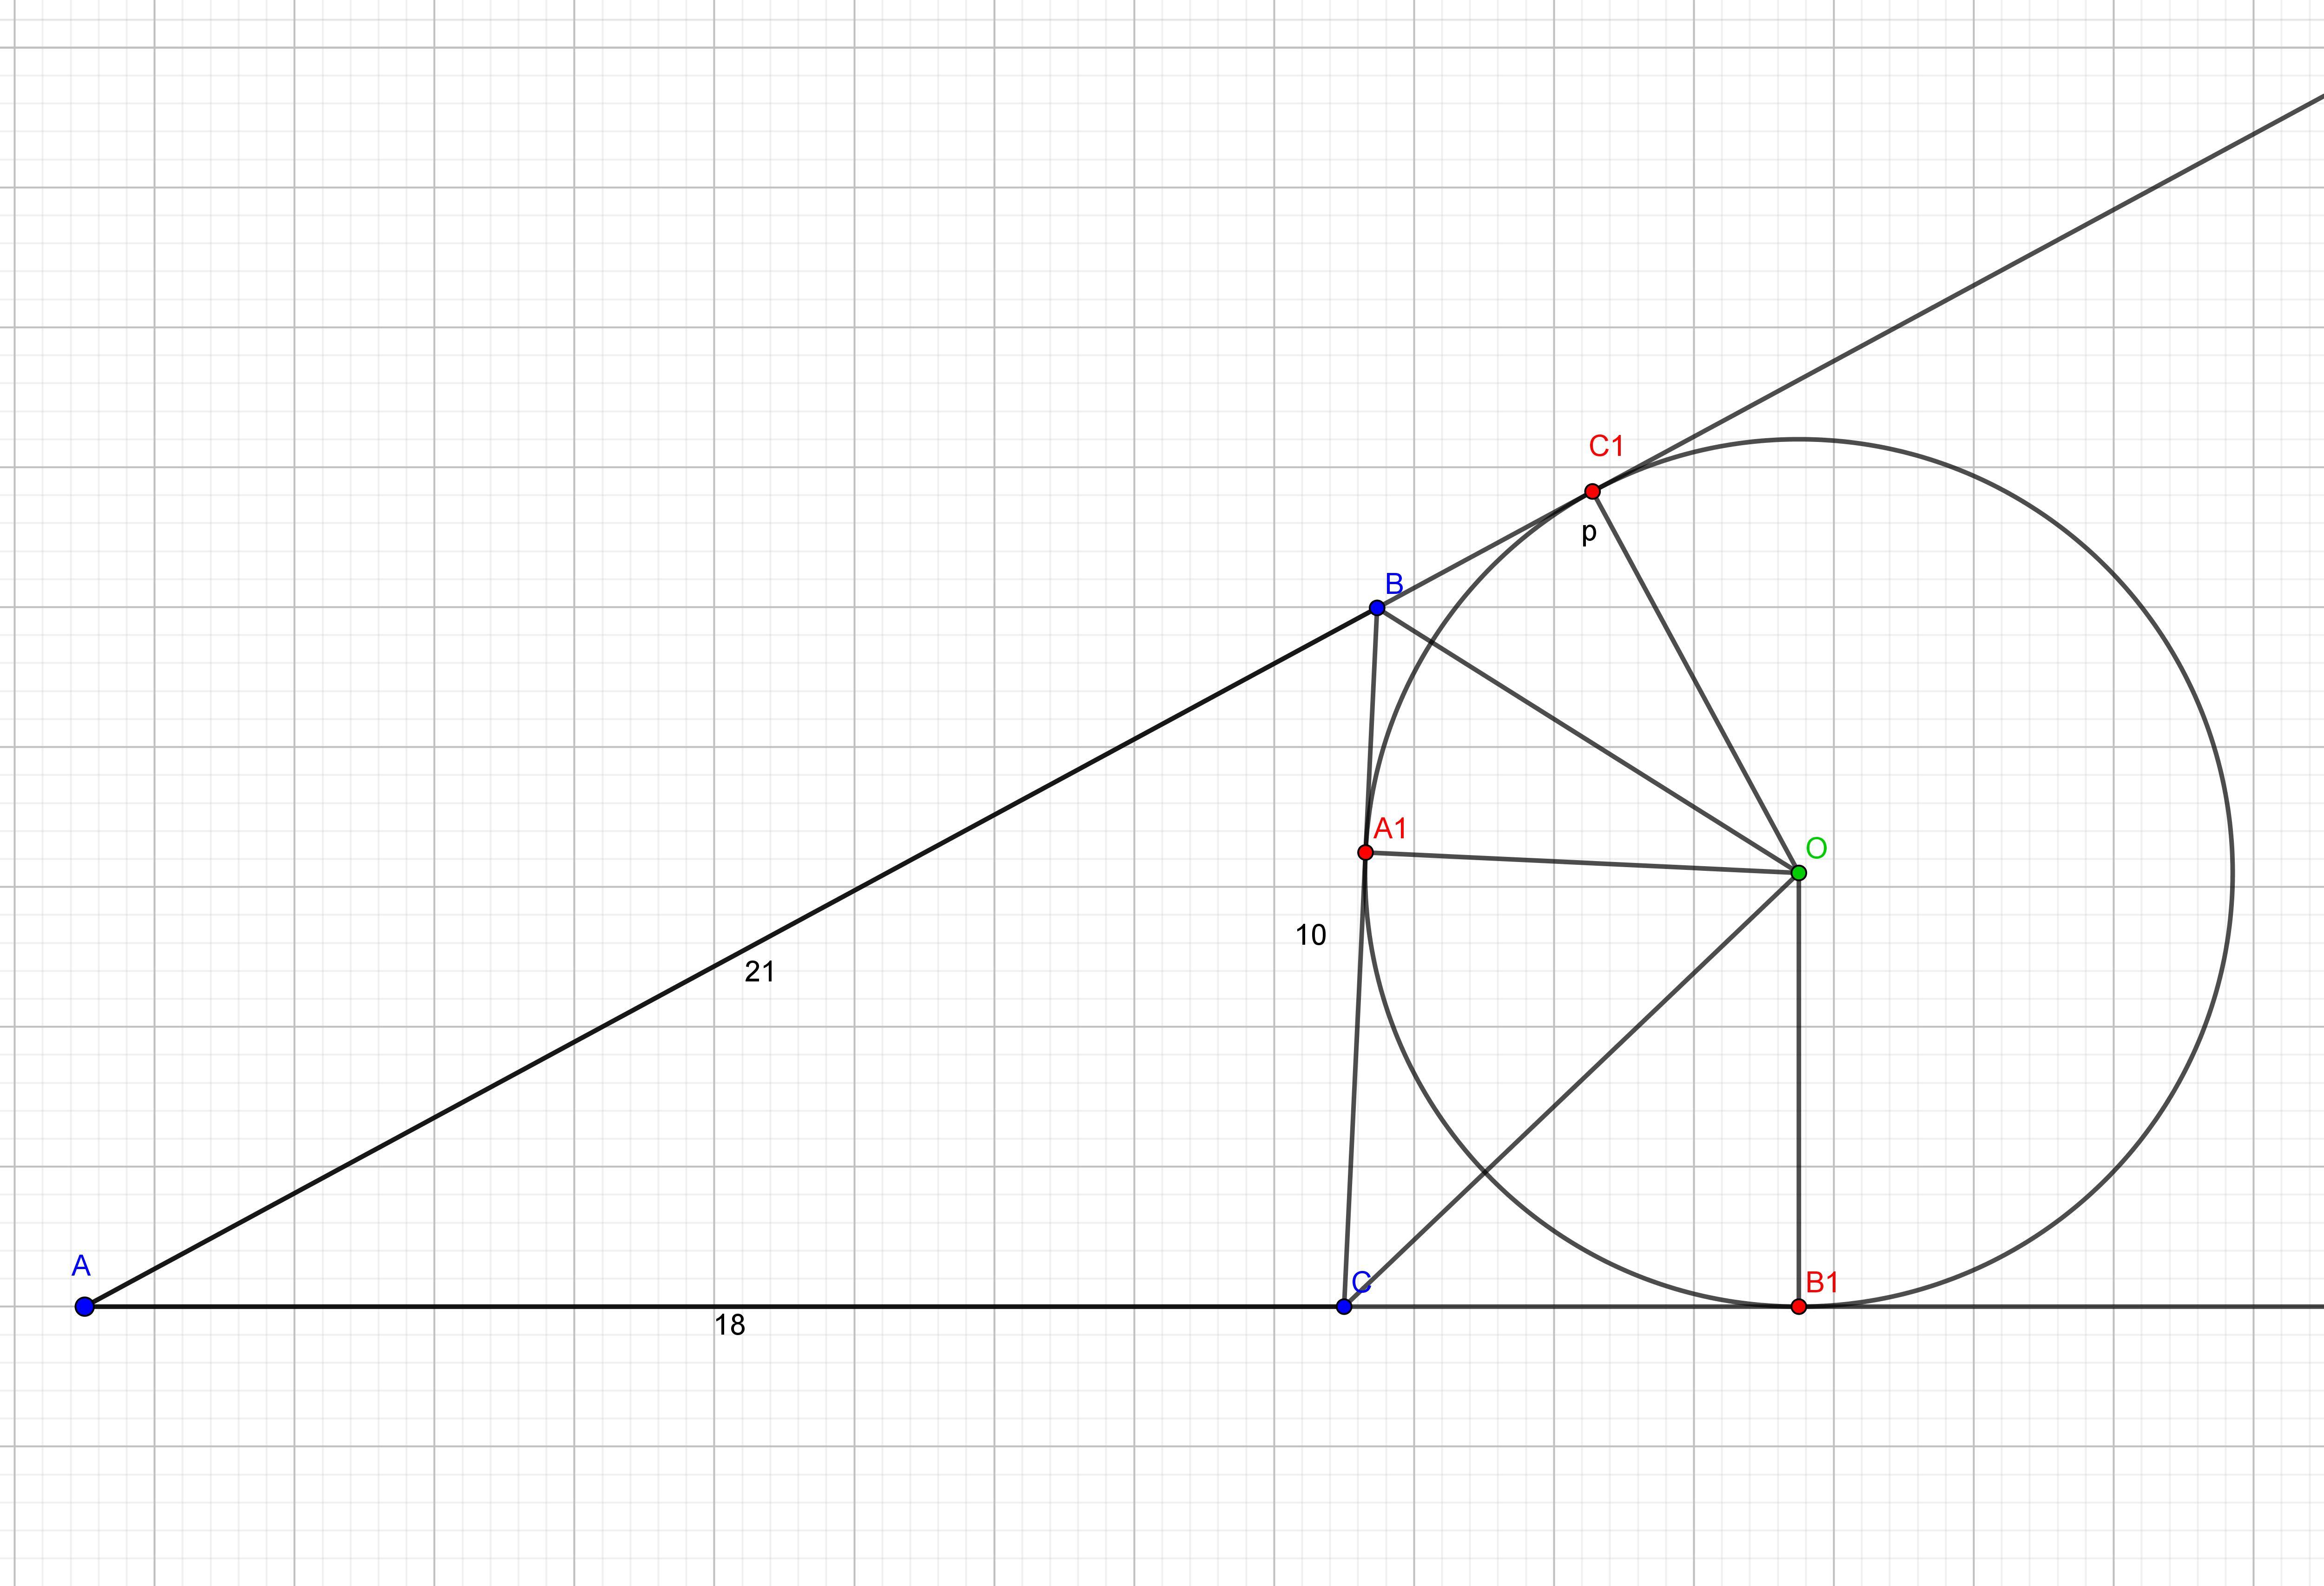 Круг в треугольнике авс. Вневписанная окружность треугольника. Окружность касается сторон треугольника. Треугольник касается окружности. Окружность касается стороны АВ треугольника.